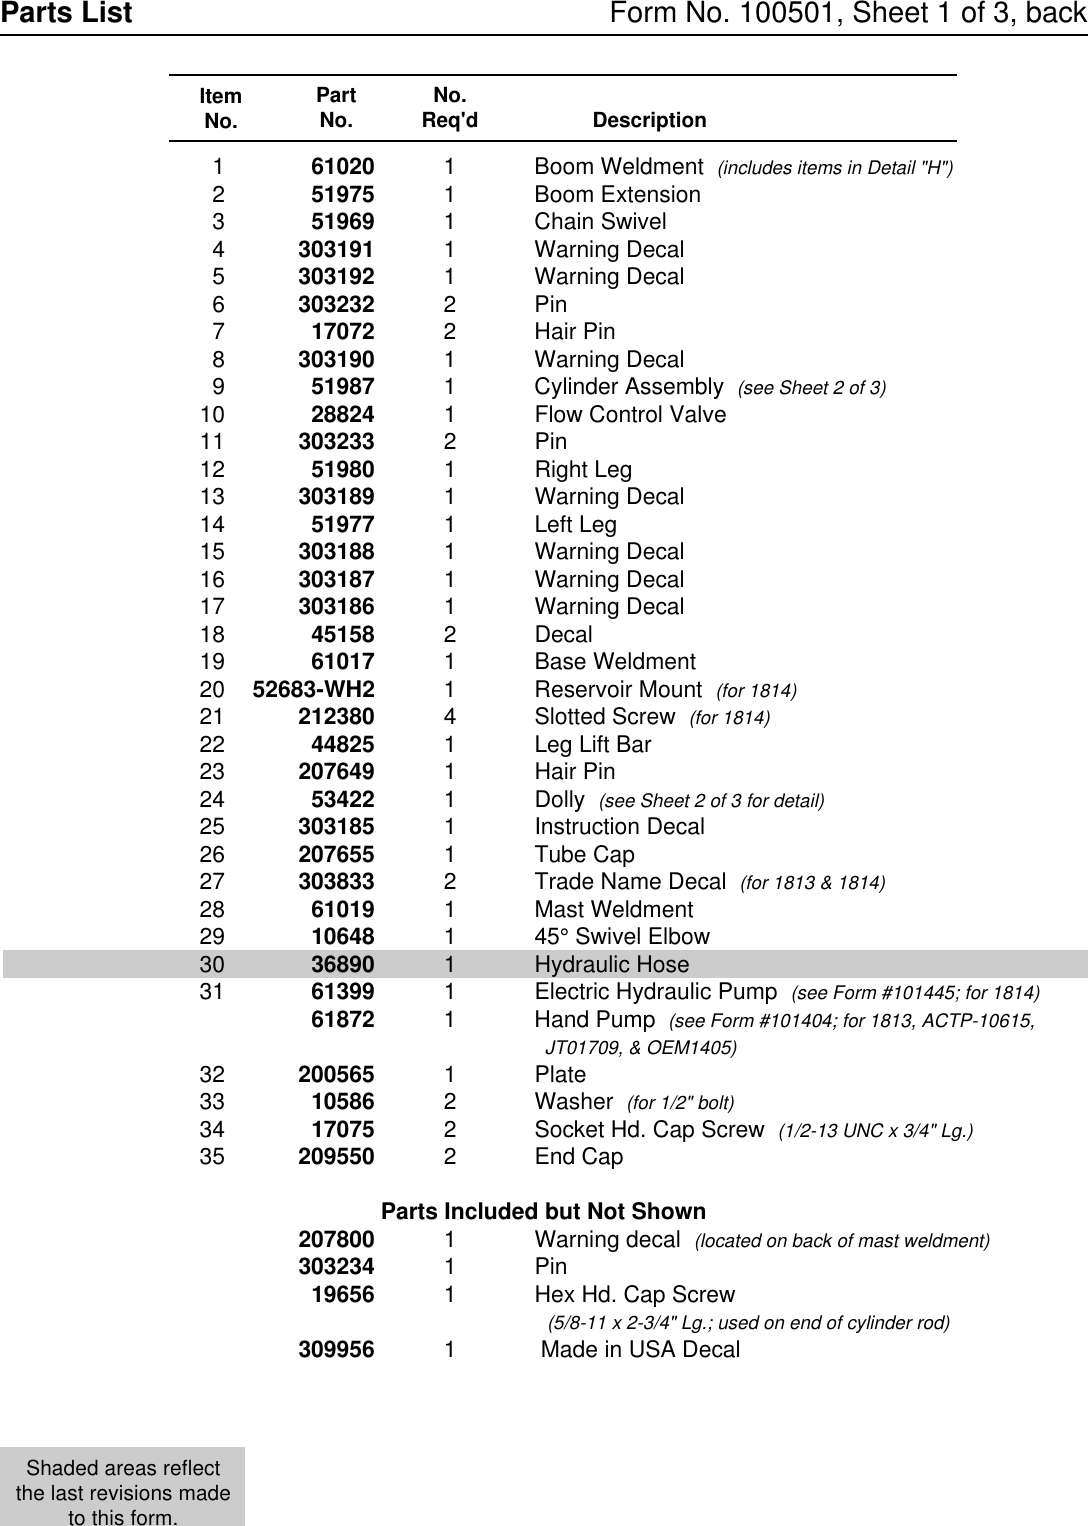 Page 2 of 6 - 100501form OTC-1213-1214-Crane-Parts-List